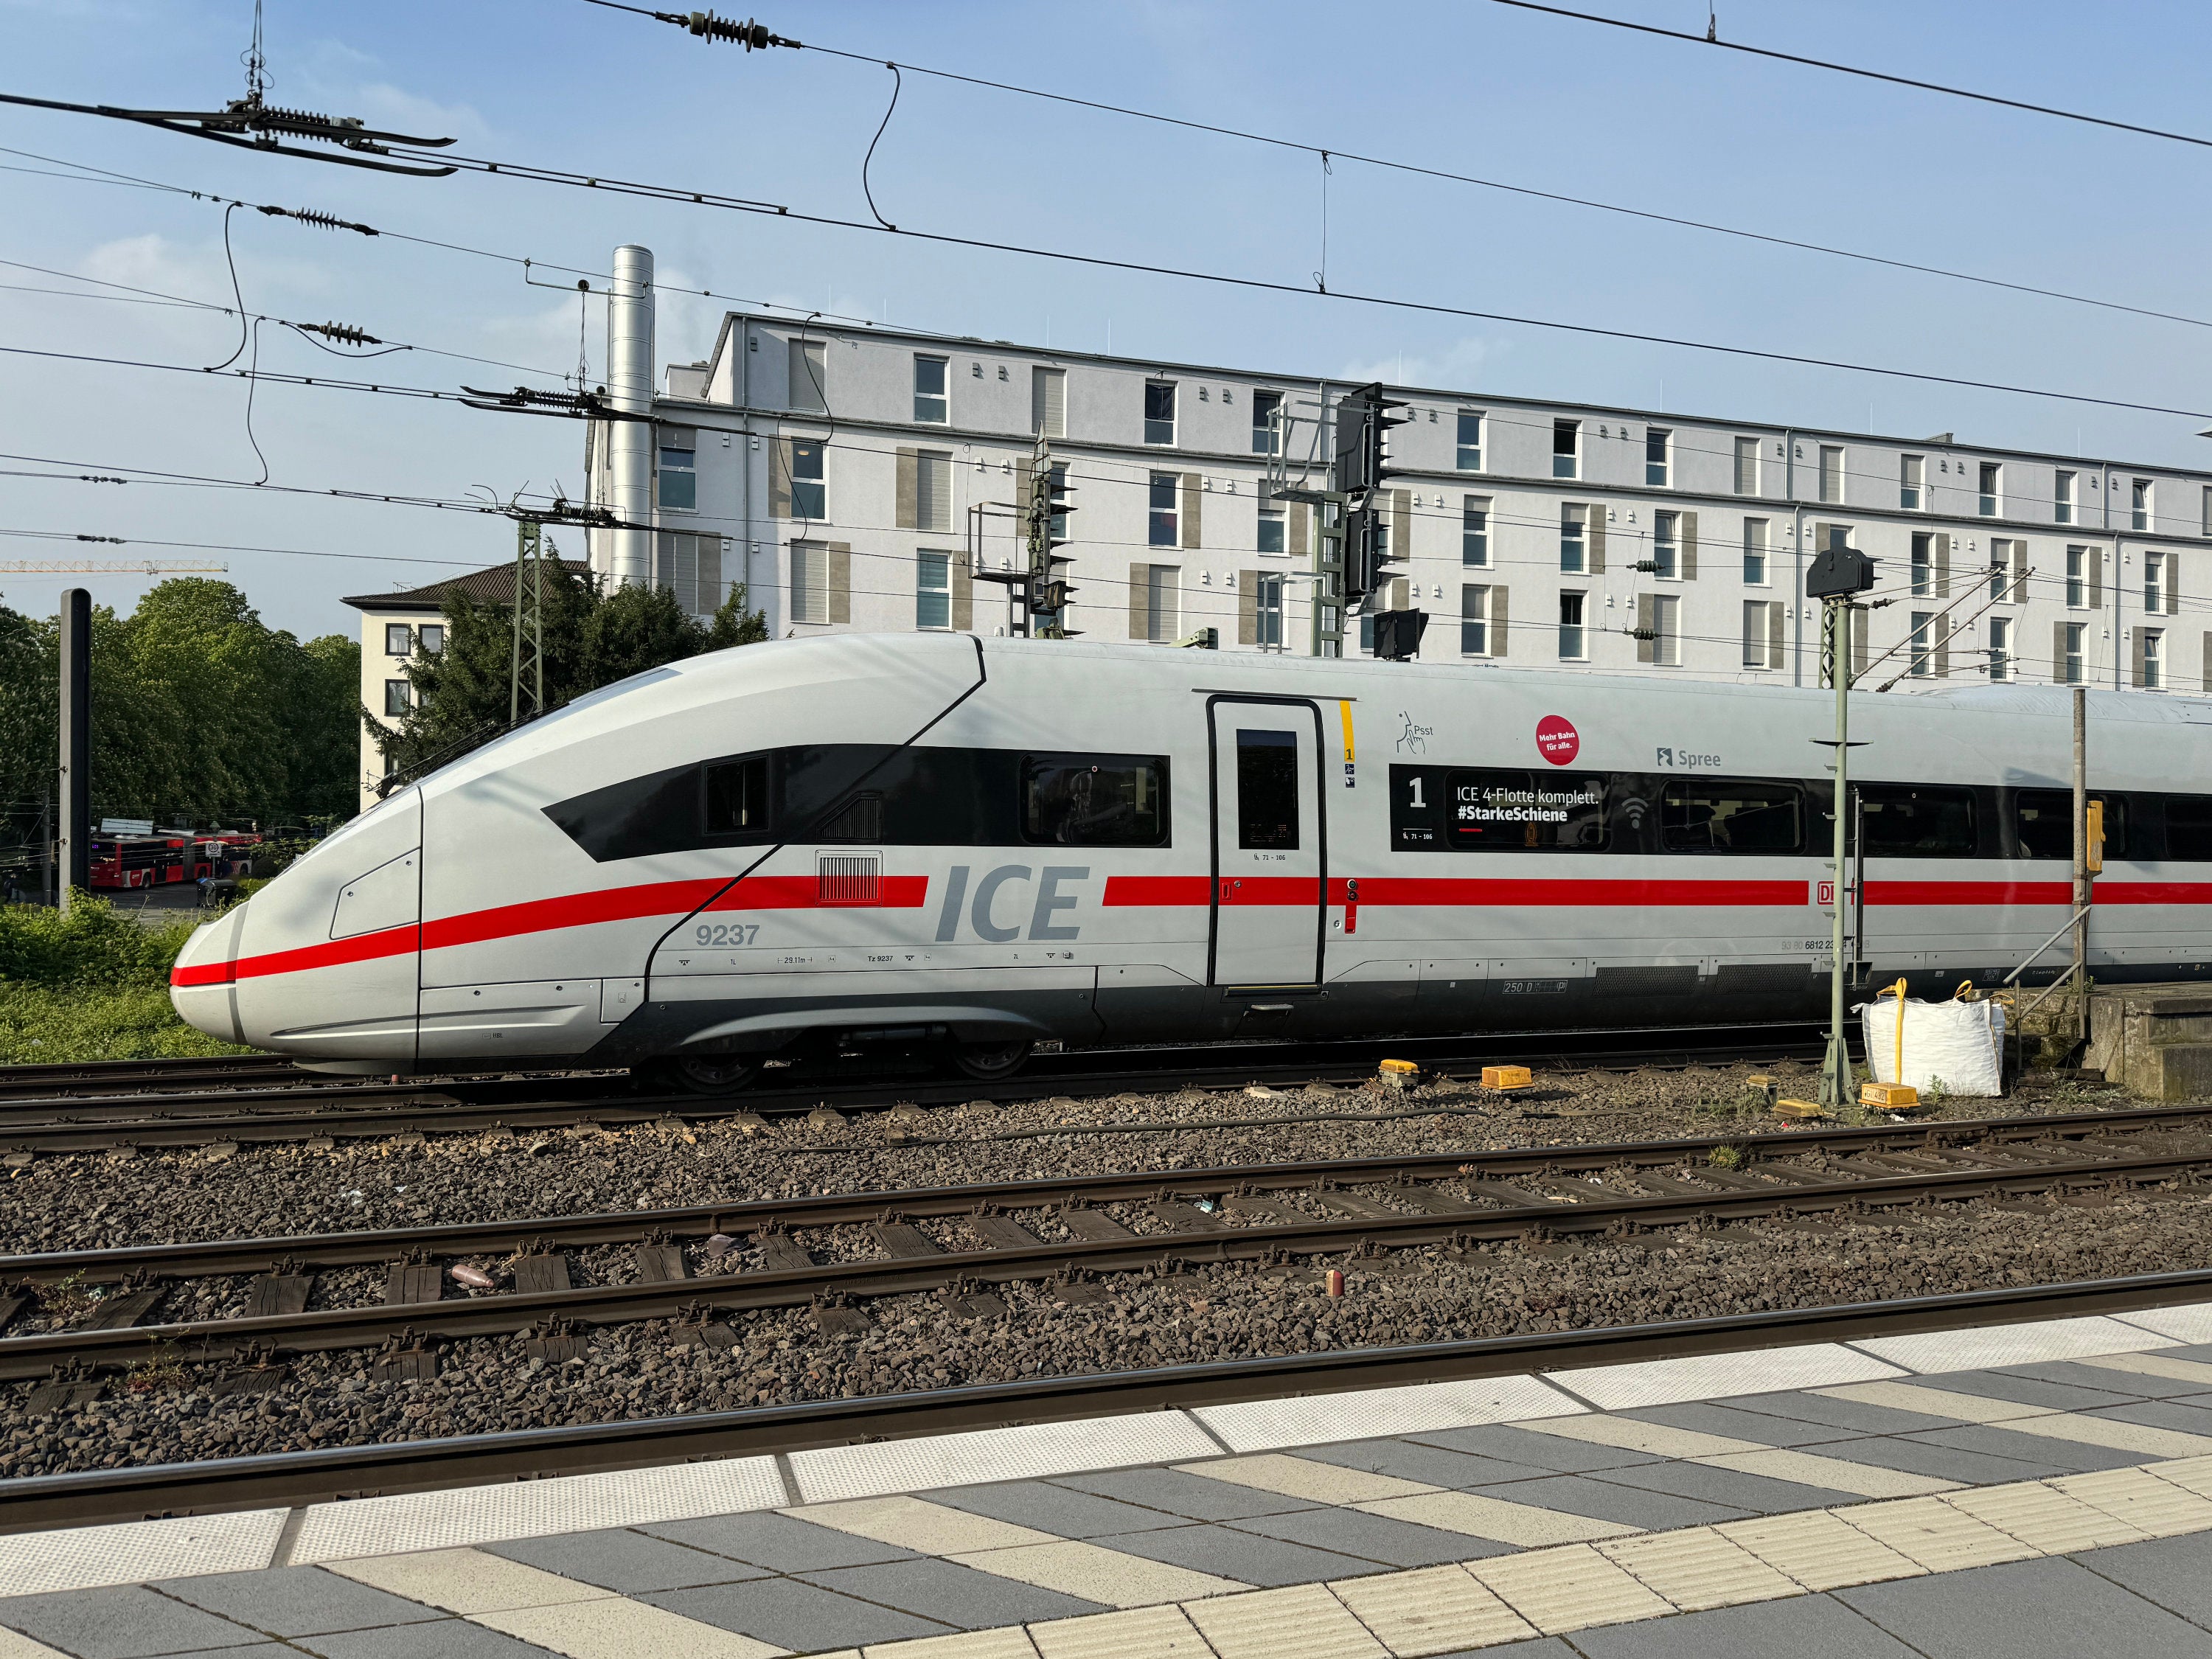 #Ab Juni: Deutsche Bahn führt Reservierungspflicht im ICE ein